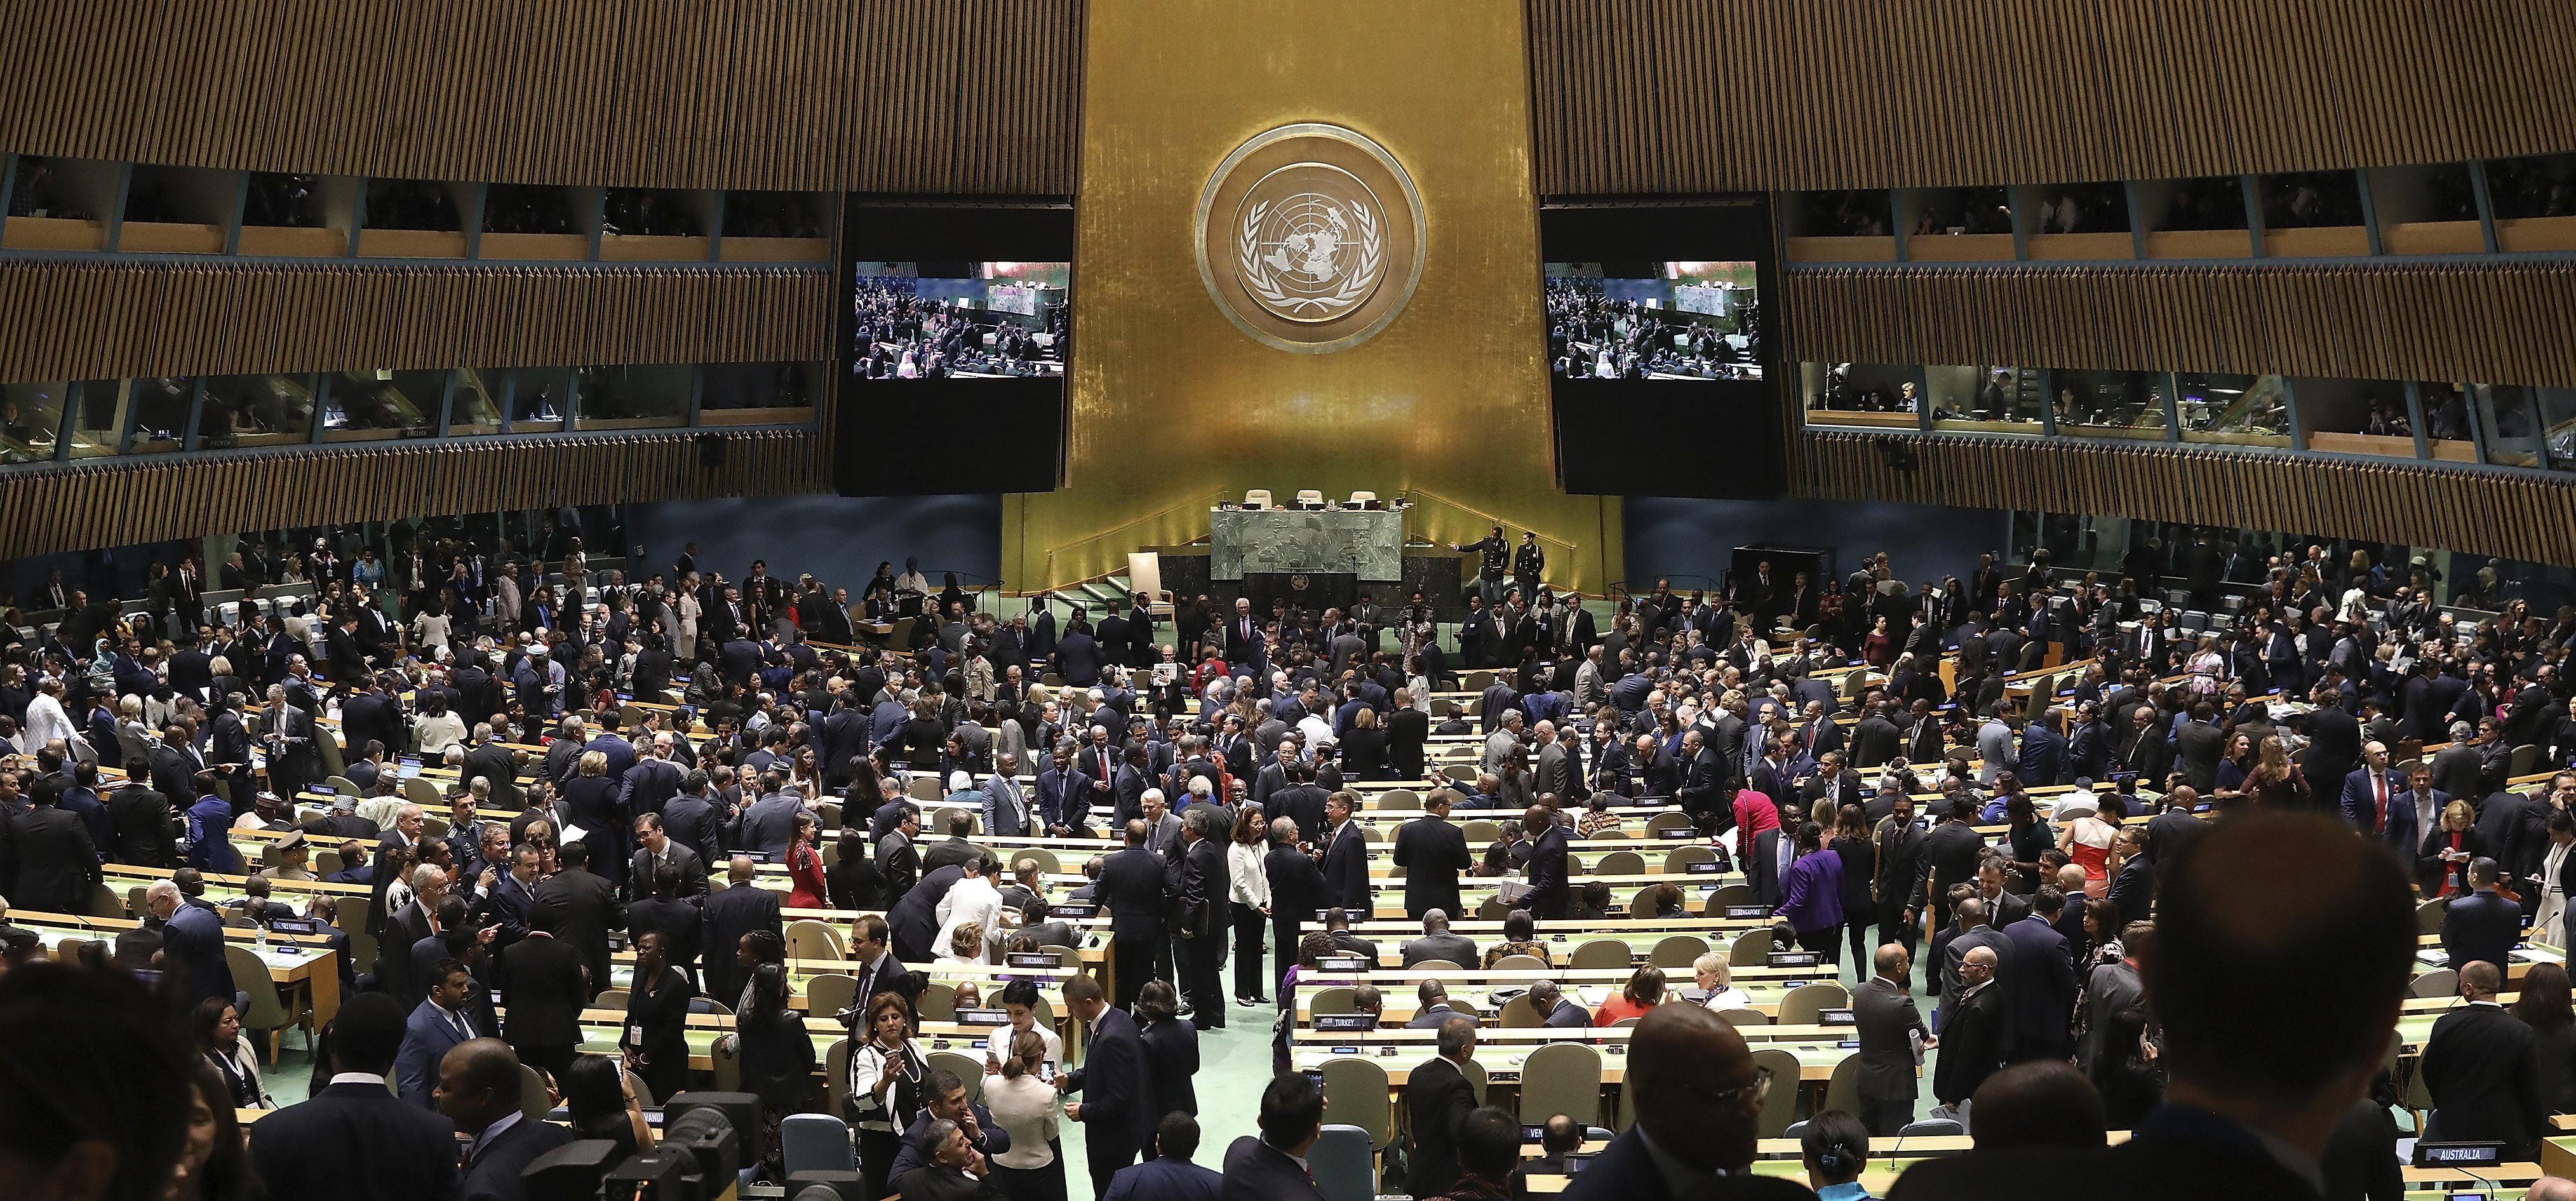 La resolución enviaría una “señal fuerte”, consideró el jefe de la diplomacia estadounidense, que hasta ahora había vetado las otras iniciativas para una tregua presentadas en el Consejo de Seguridad. (EFE/Justin Lane)
